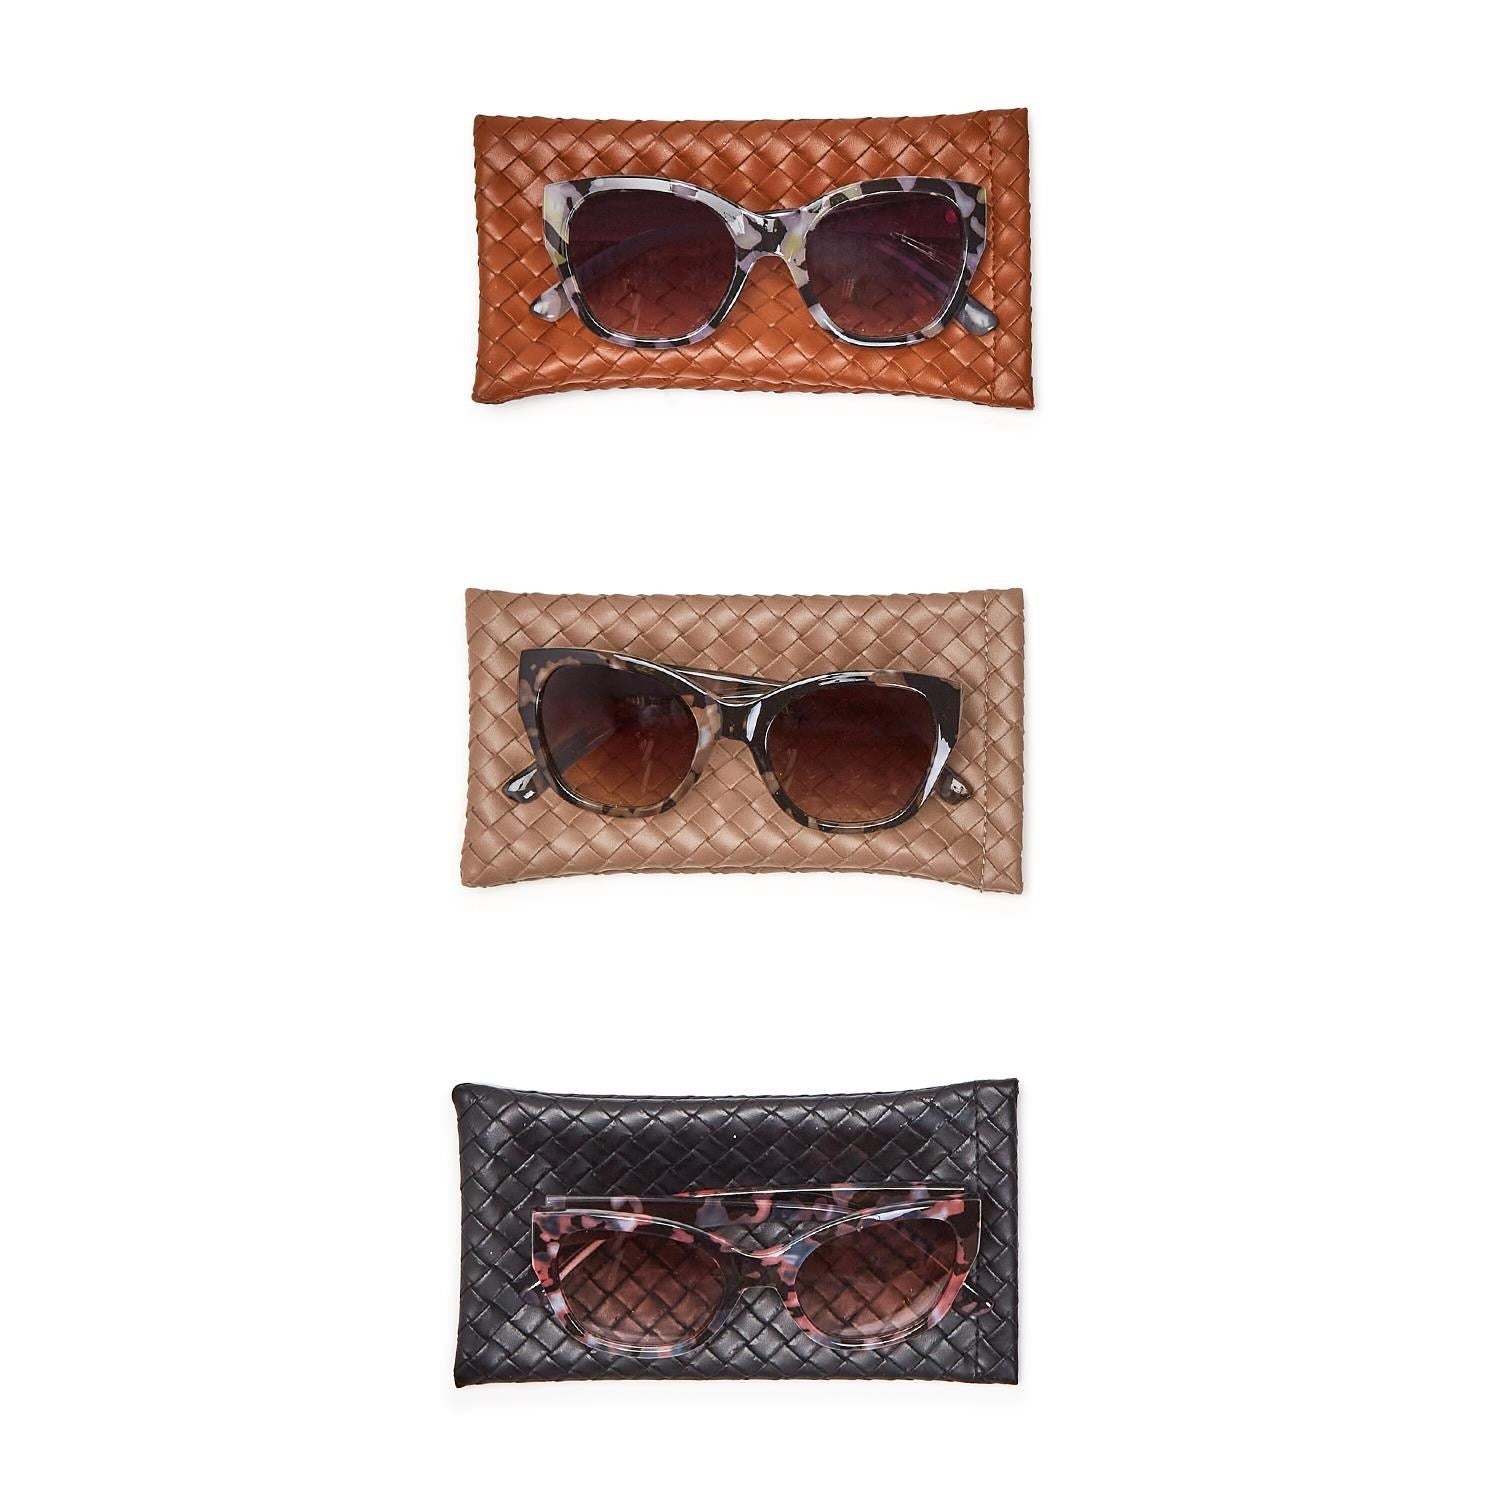 The Milli Set Snow Edition  Trending sunglasses, Louis vuitton